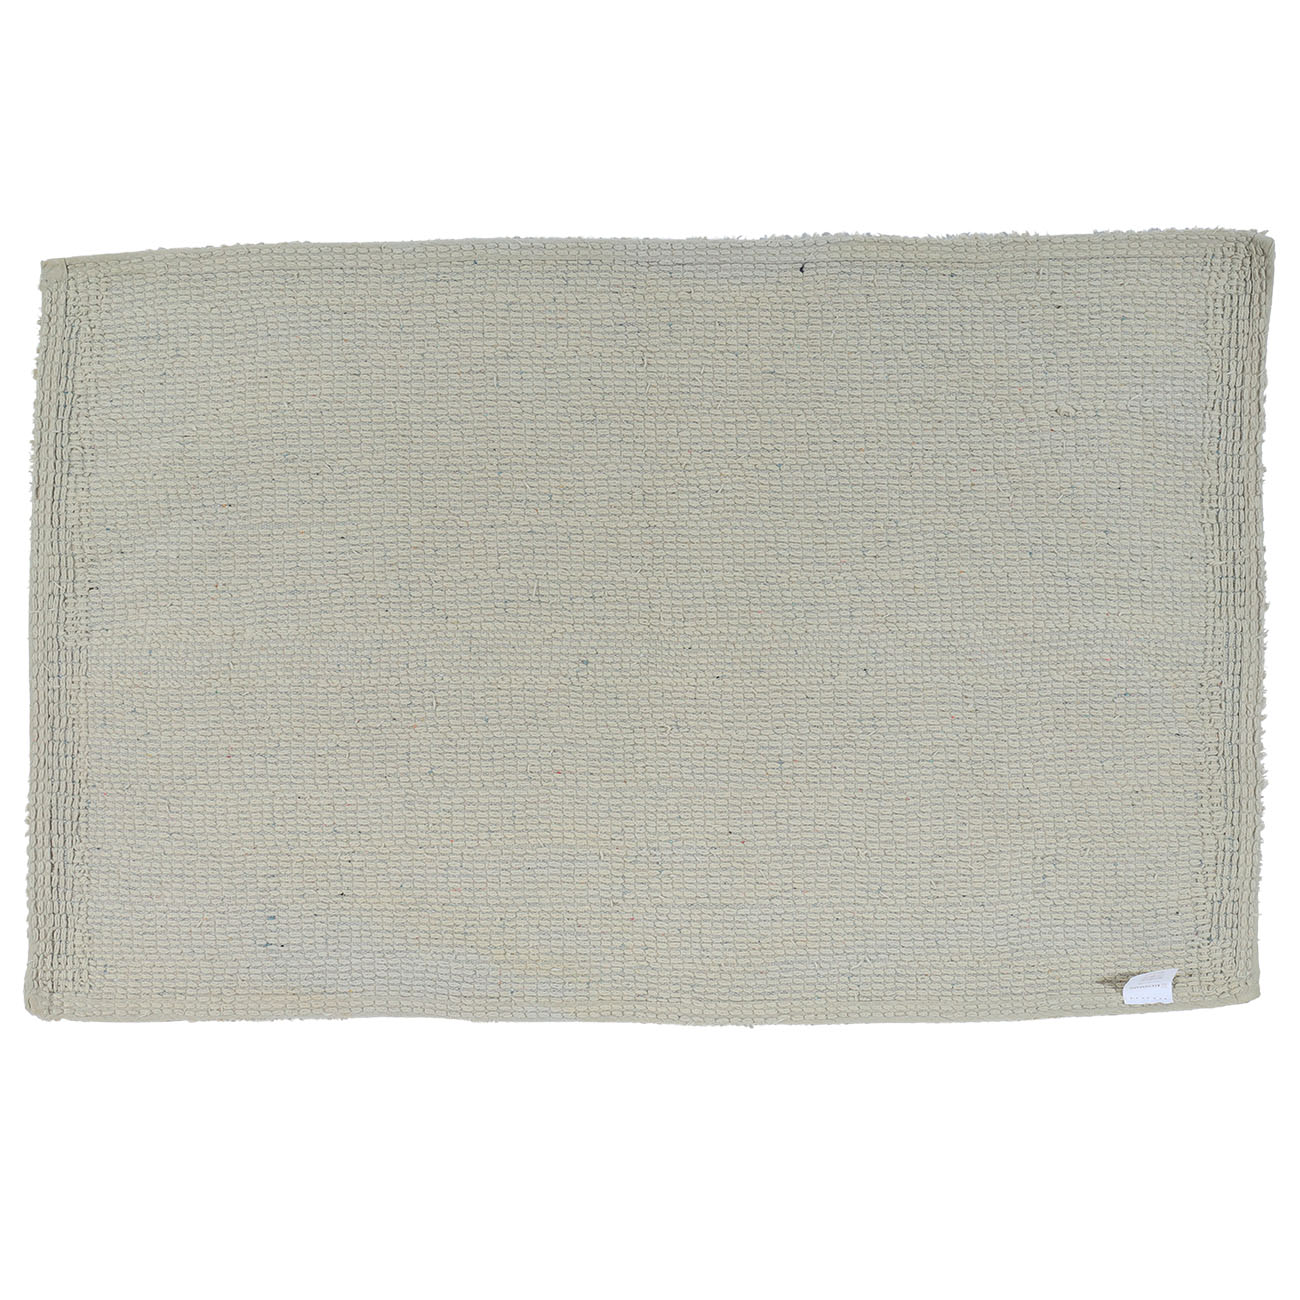 Коврик, 50х80 см, хлопок, серый, Cottony изображение № 2